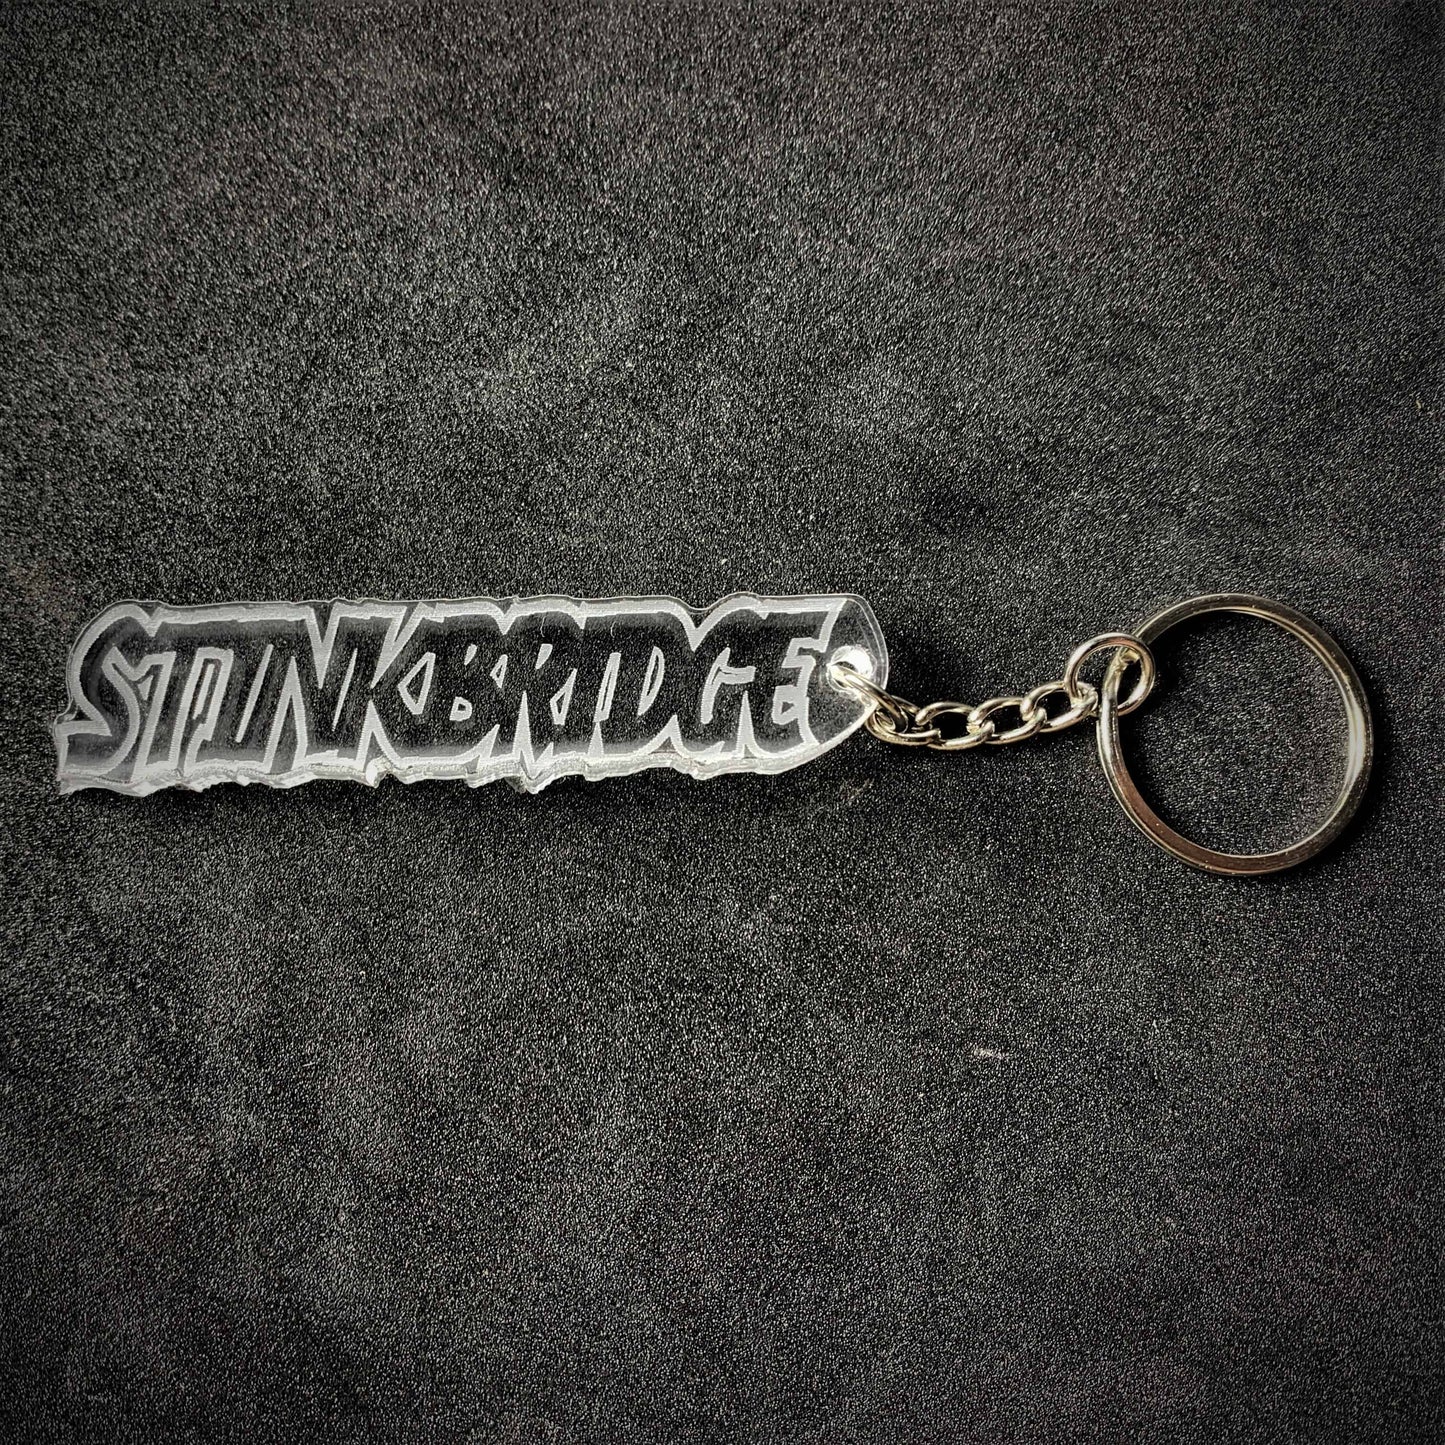 Team Stinkbridge Banger Key Ring - Key Ring - Stock Car & Banger Toy Tracks